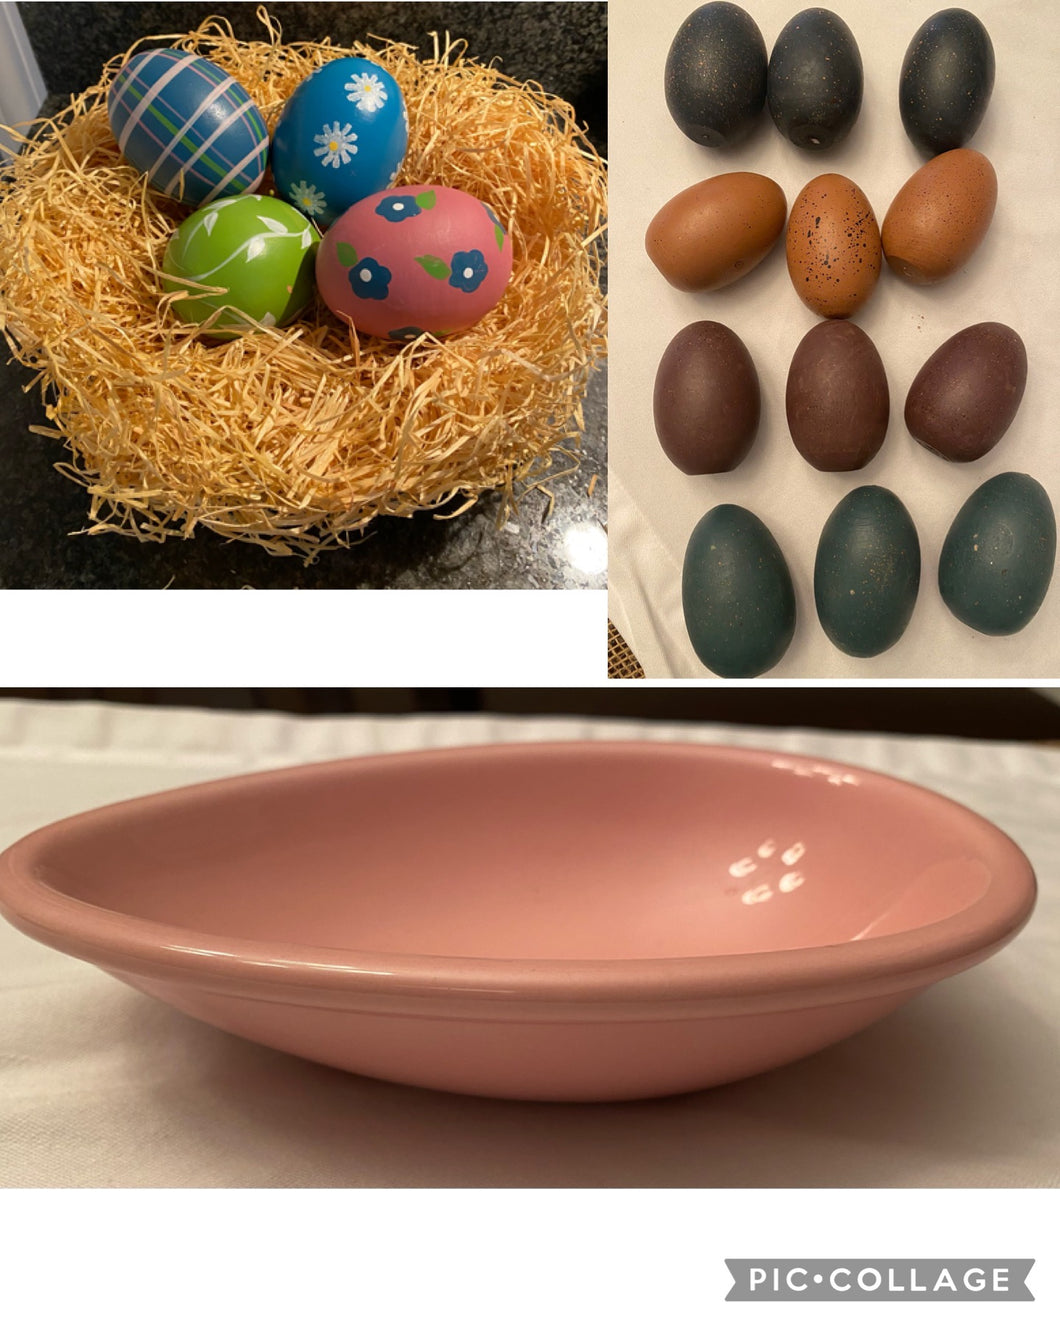 Egg Decorations